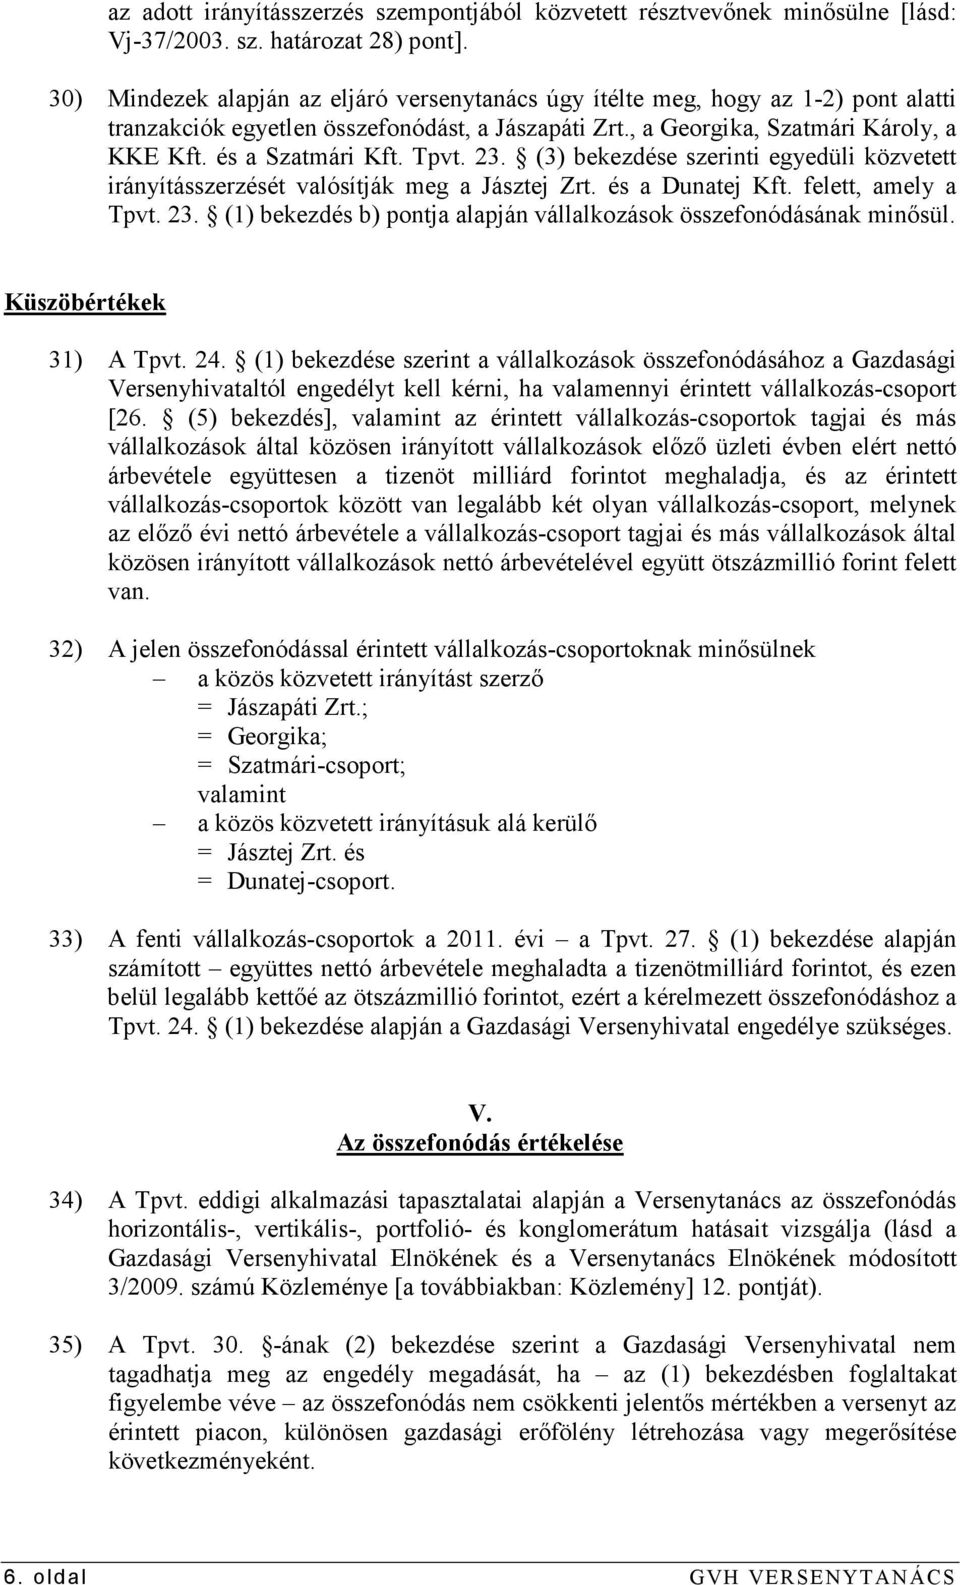 Tpvt. 23. (3) bekezdése szerinti egyedüli közvetett irányításszerzését valósítják meg a Jásztej Zrt. és a Dunatej Kft. felett, amely a Tpvt. 23. (1) bekezdés b) pontja alapján vállalkozások összefonódásának minısül.